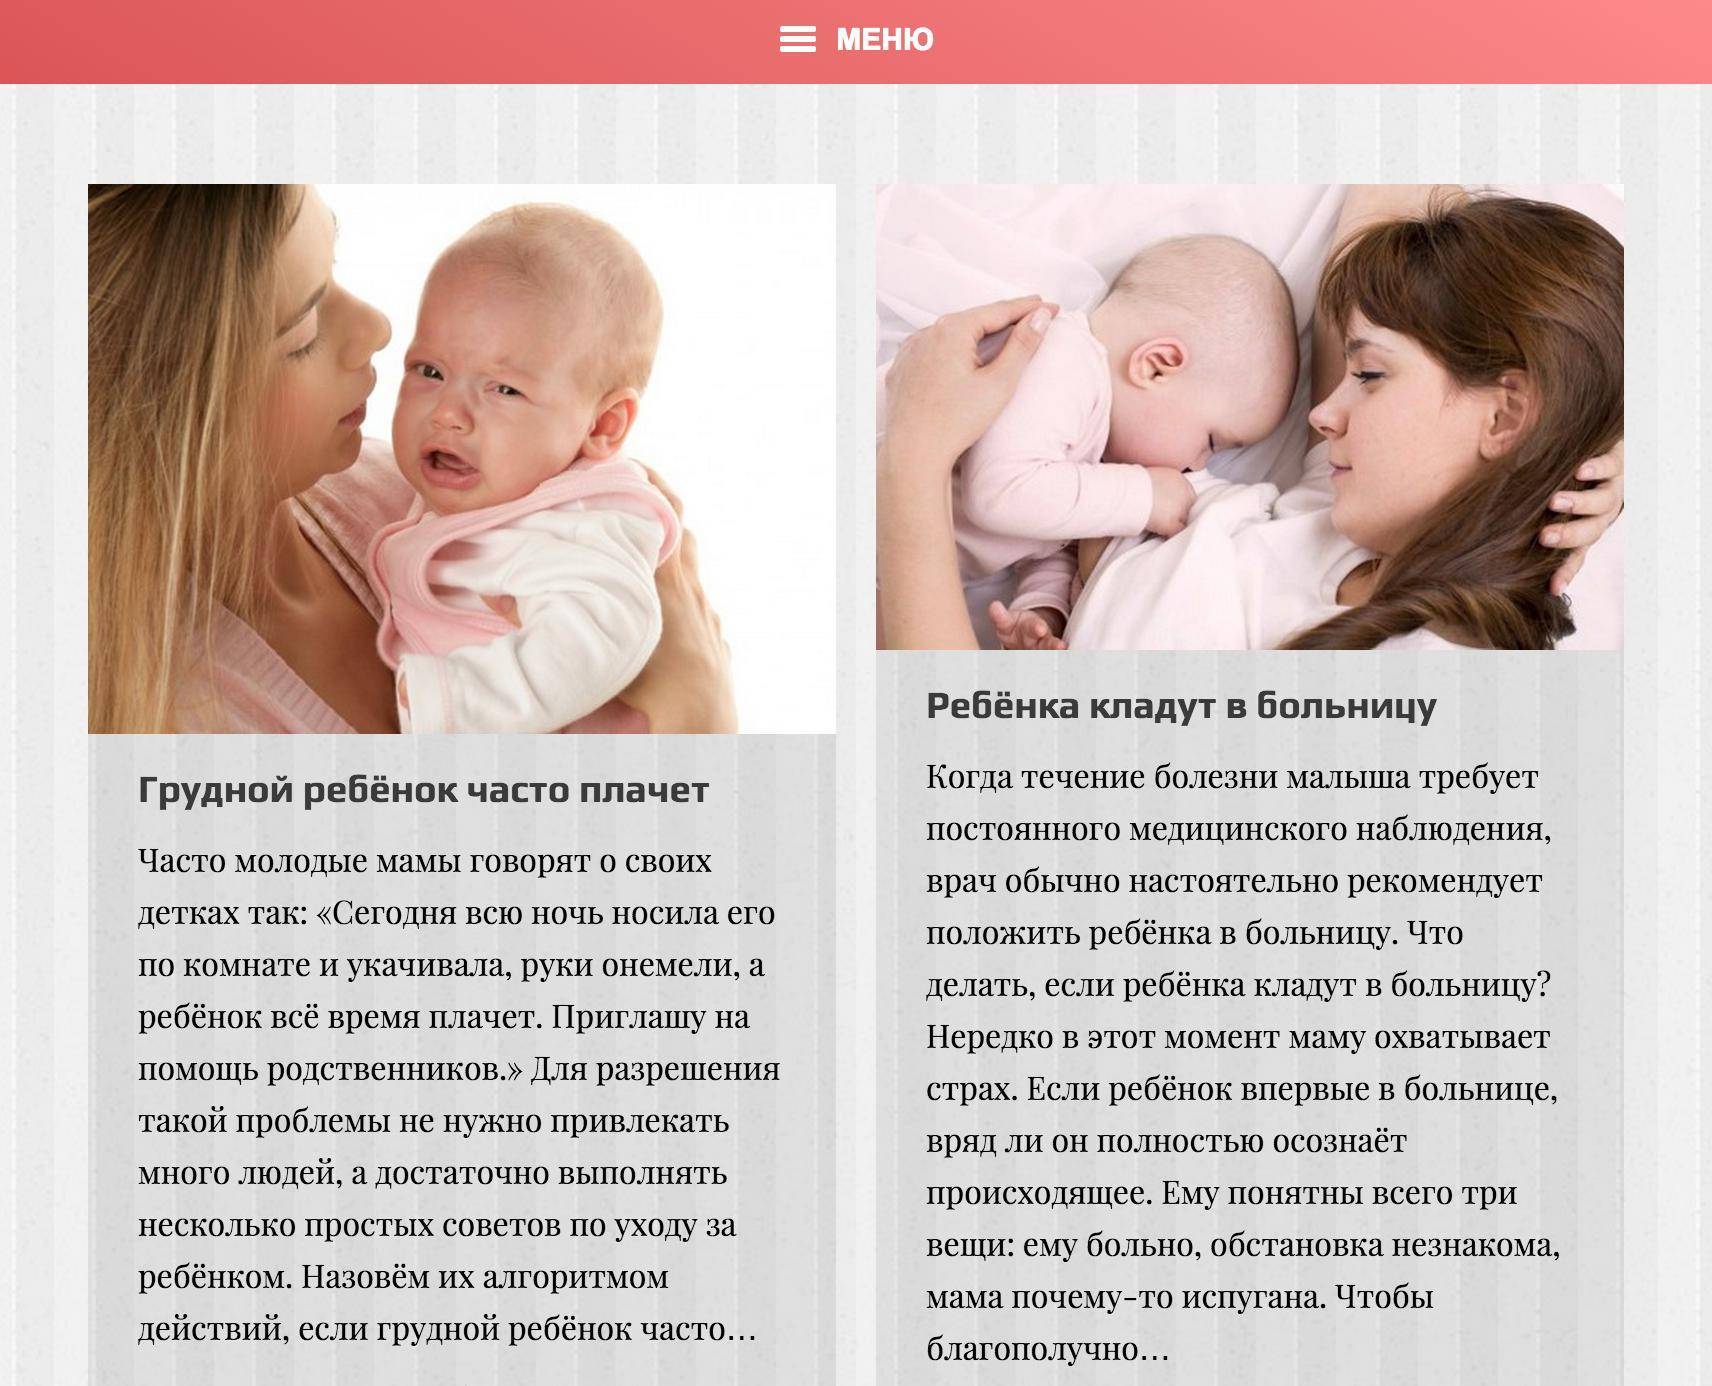 Как правильно ухаживать маме за новорожденным ребенком - 8 советов - умкамама.ру